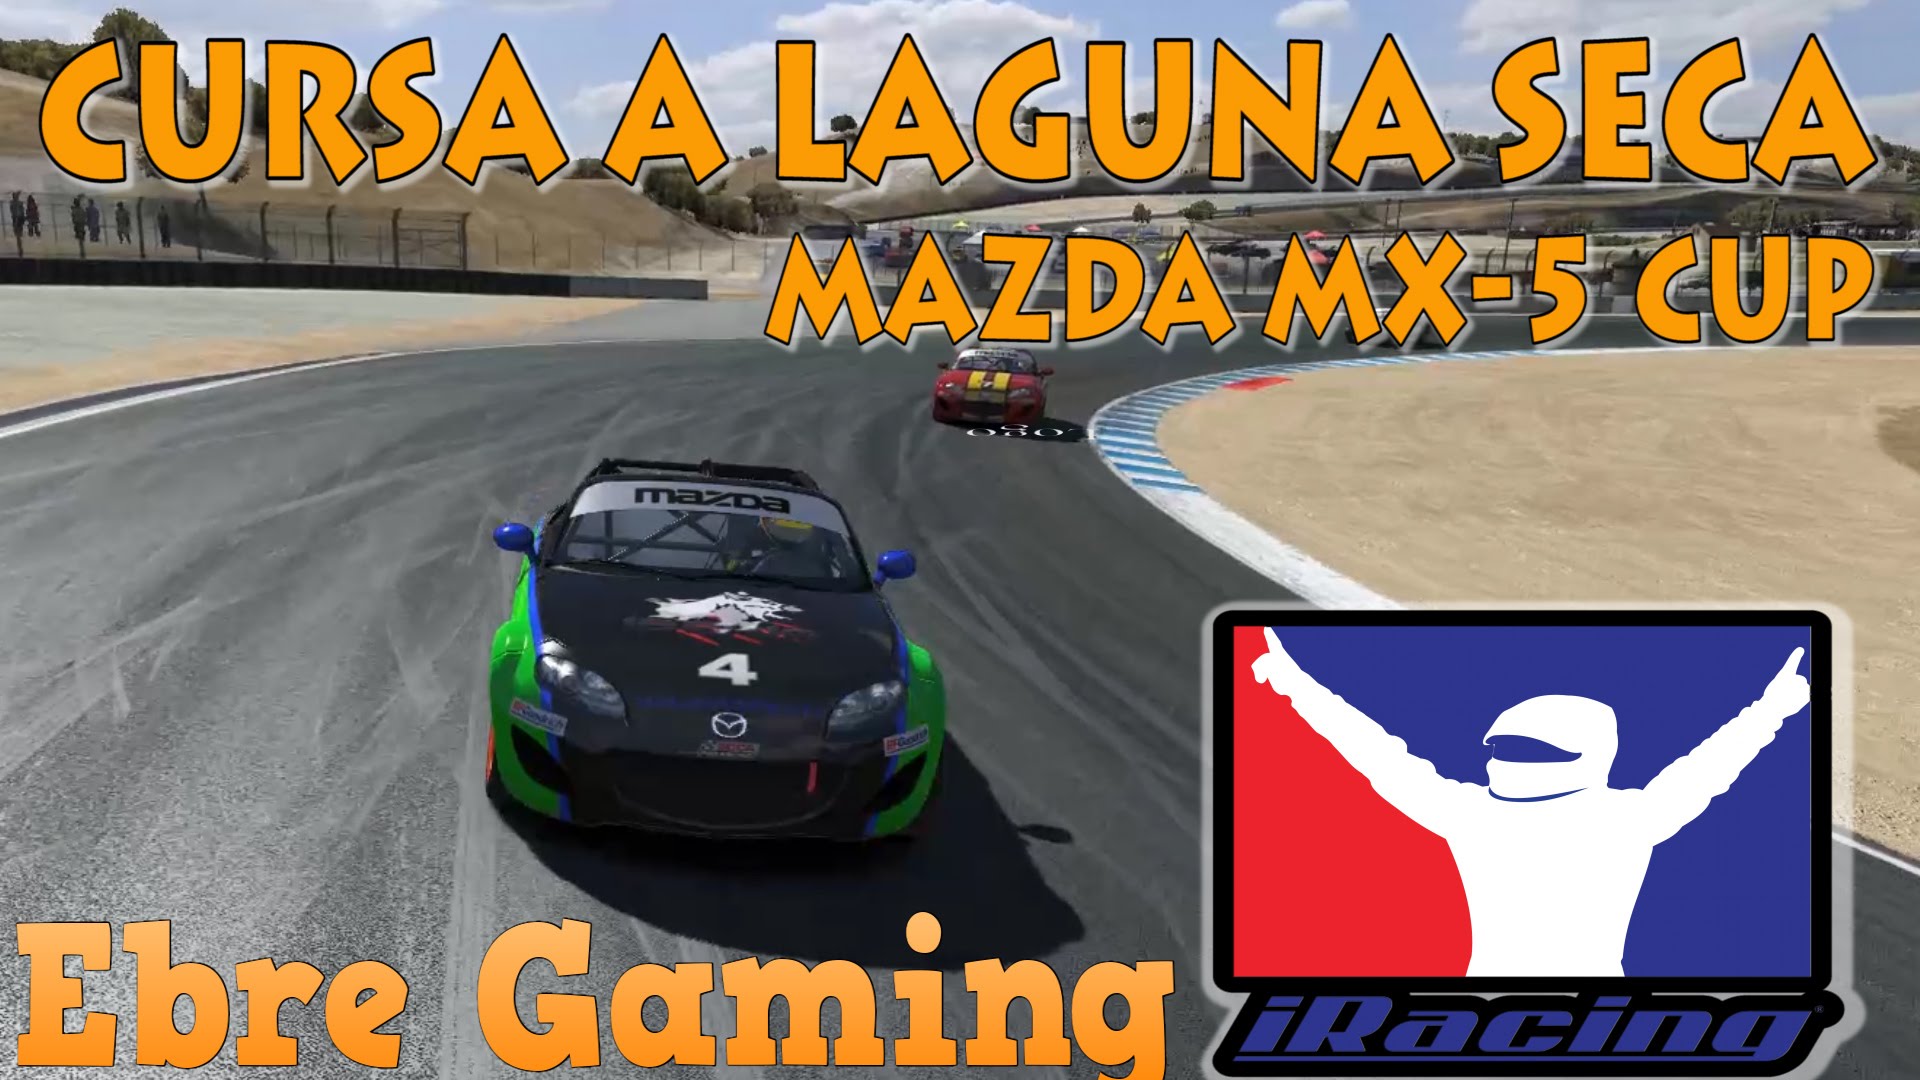 Cursa a Laguna Seca amb el Mazda MX-5 Cup || iRacing de EbreGaming